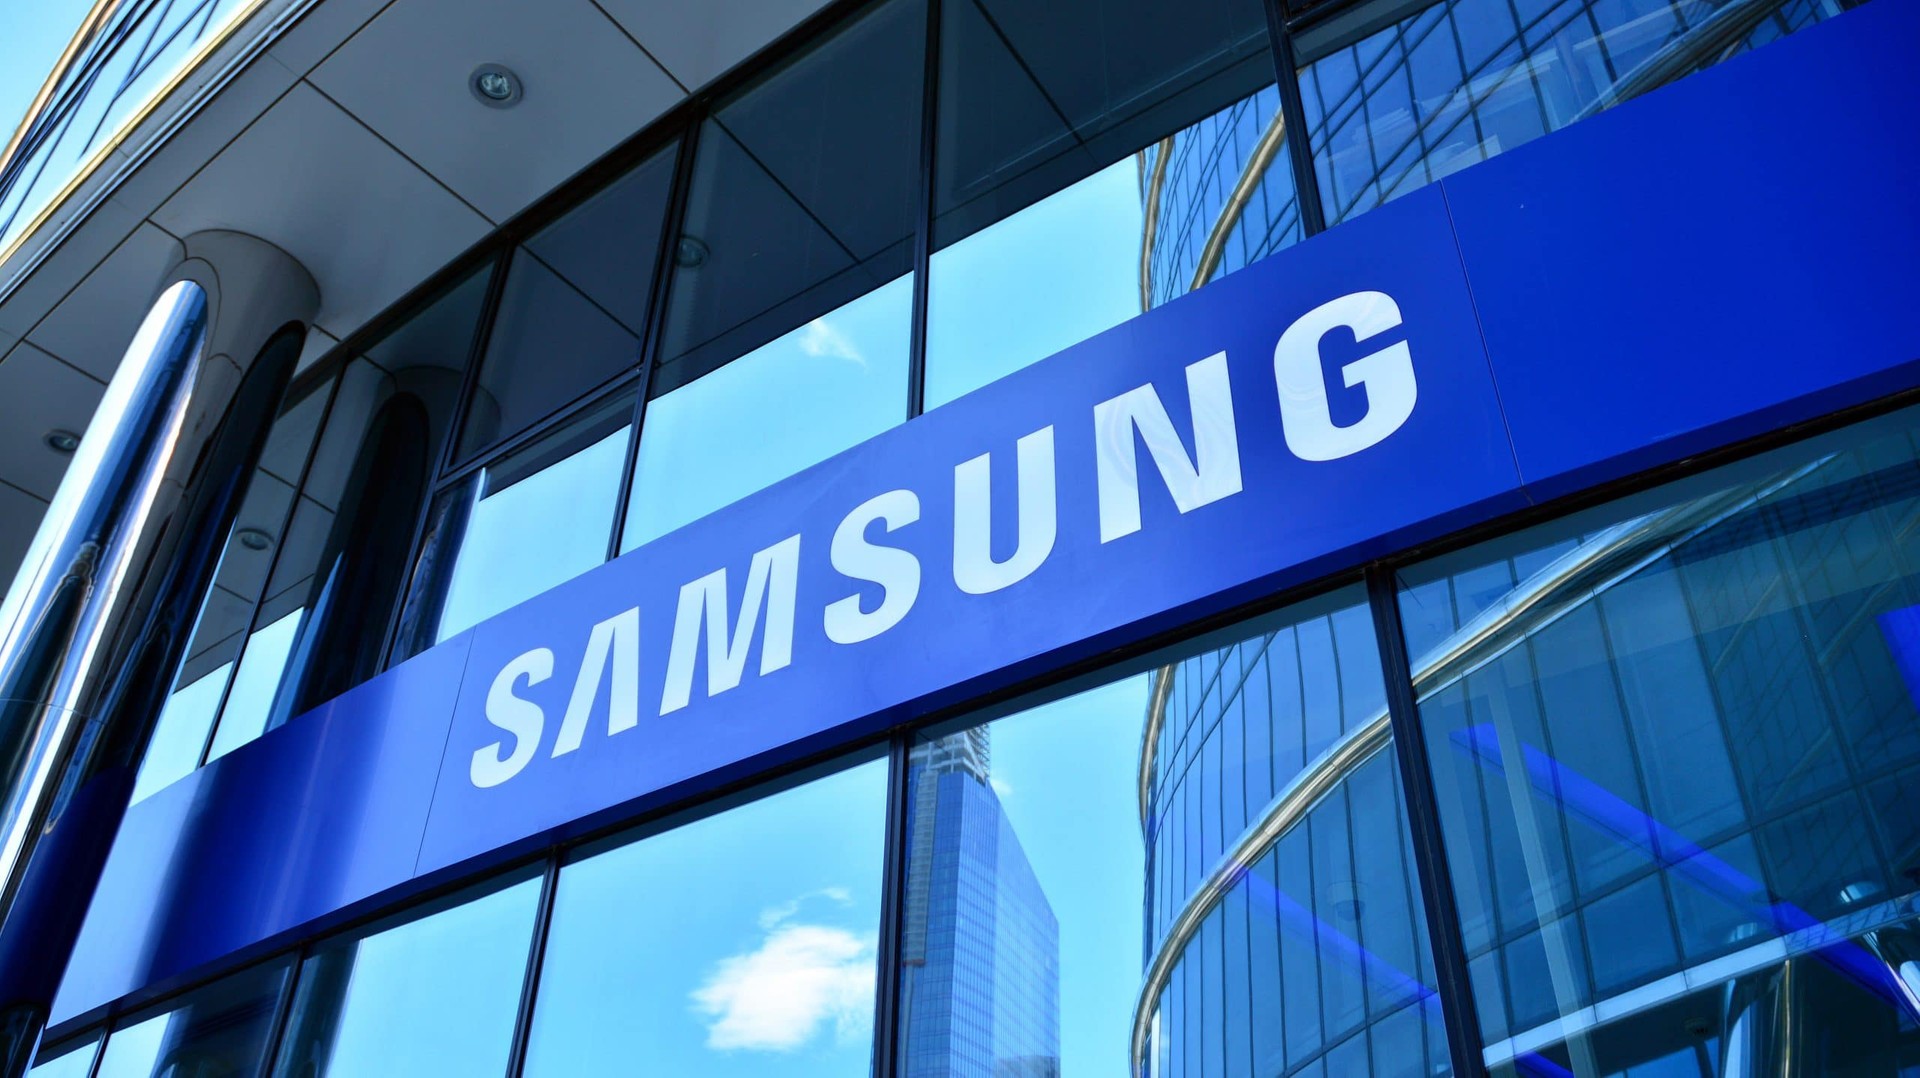 Samsung deve produzir 30 milhões de unidades do Galaxy S22 Series, revela relatório